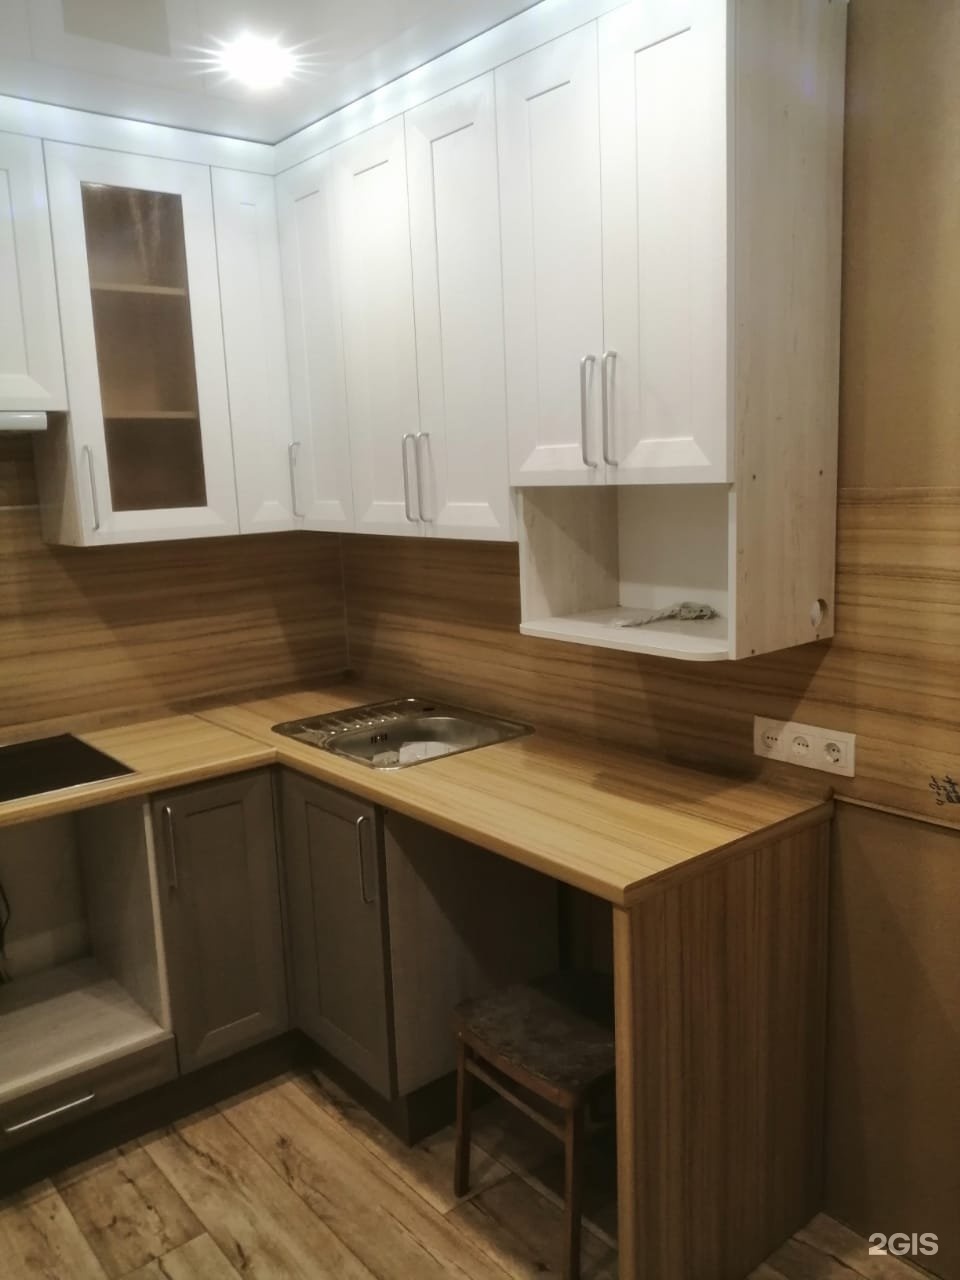 Белорусская мебель кухонная мебель